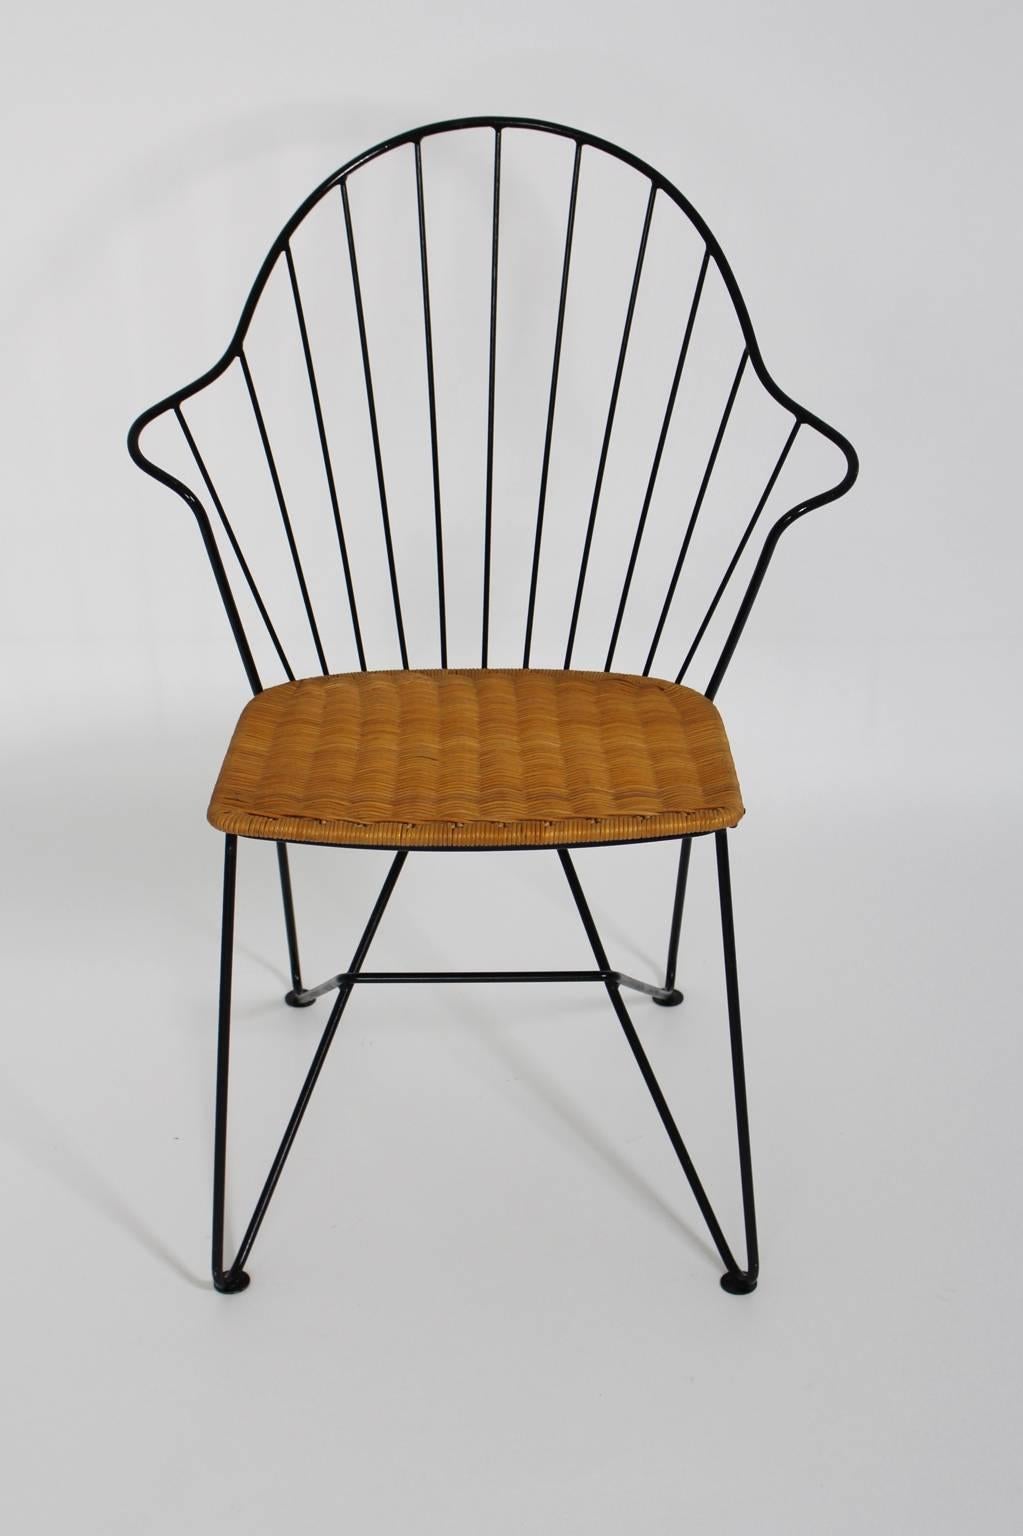 Astoria chair by V. Moedlhammer, circa 1955.
Executed by Sonett, Karl Fostel Sen. Erben.

Wire steel chair, wicker seat, excellent original condition.

Lit: Möbeldesign der 50er Jahre, Eva B. Ottilinger, Boehlau Verlag, p. 138.